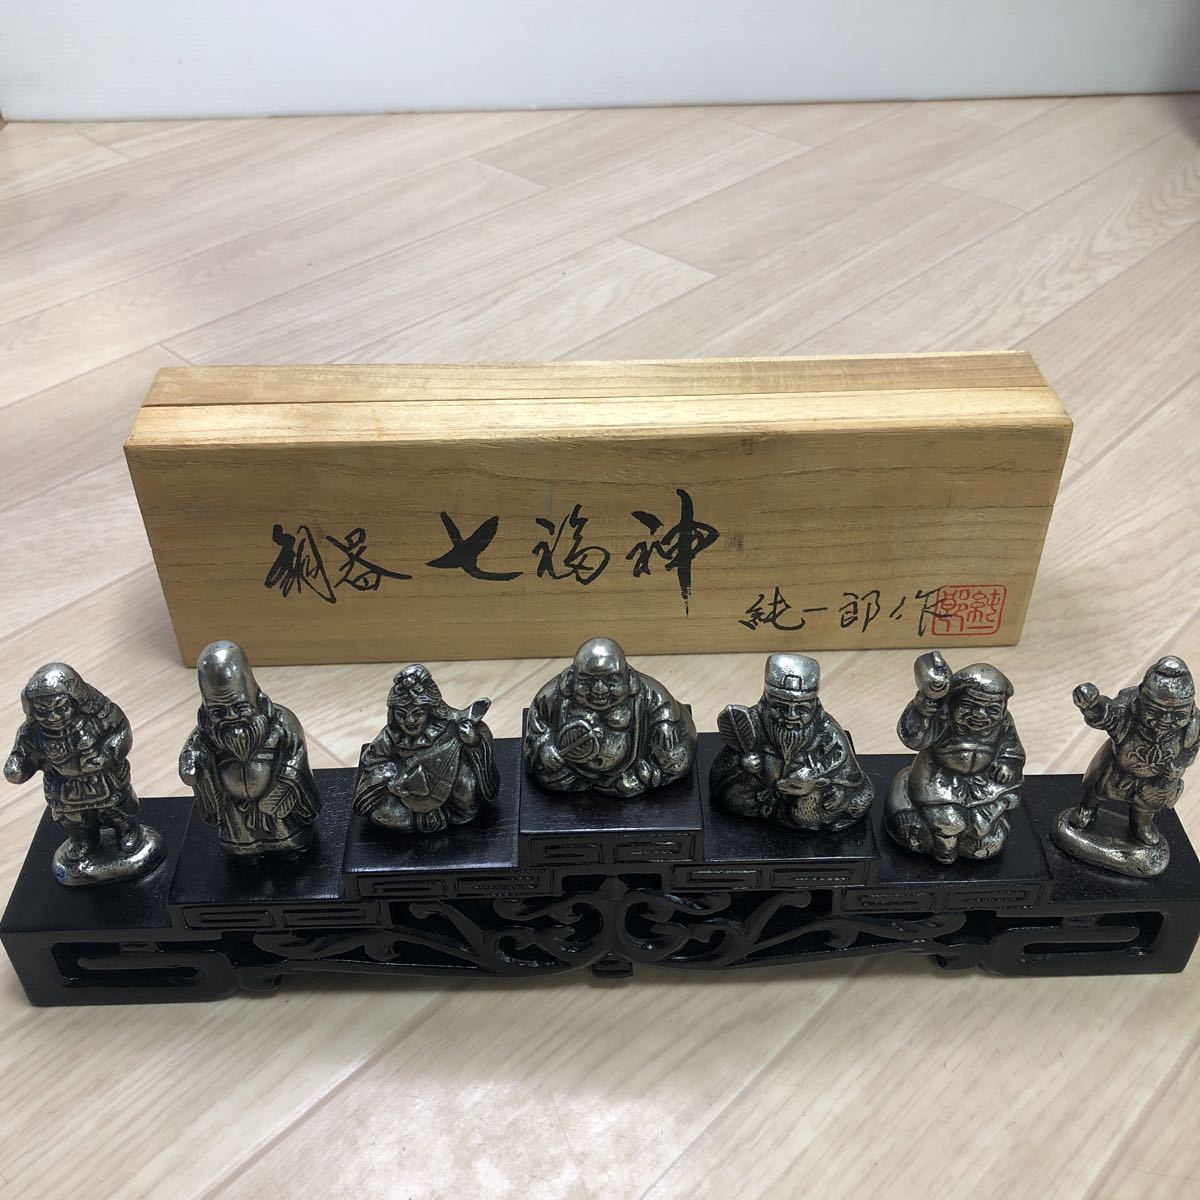 般若純一郎作 銅器 七福神 台付き 恵比寿 大黒天 置物 縁起物 銅製 (A1244)